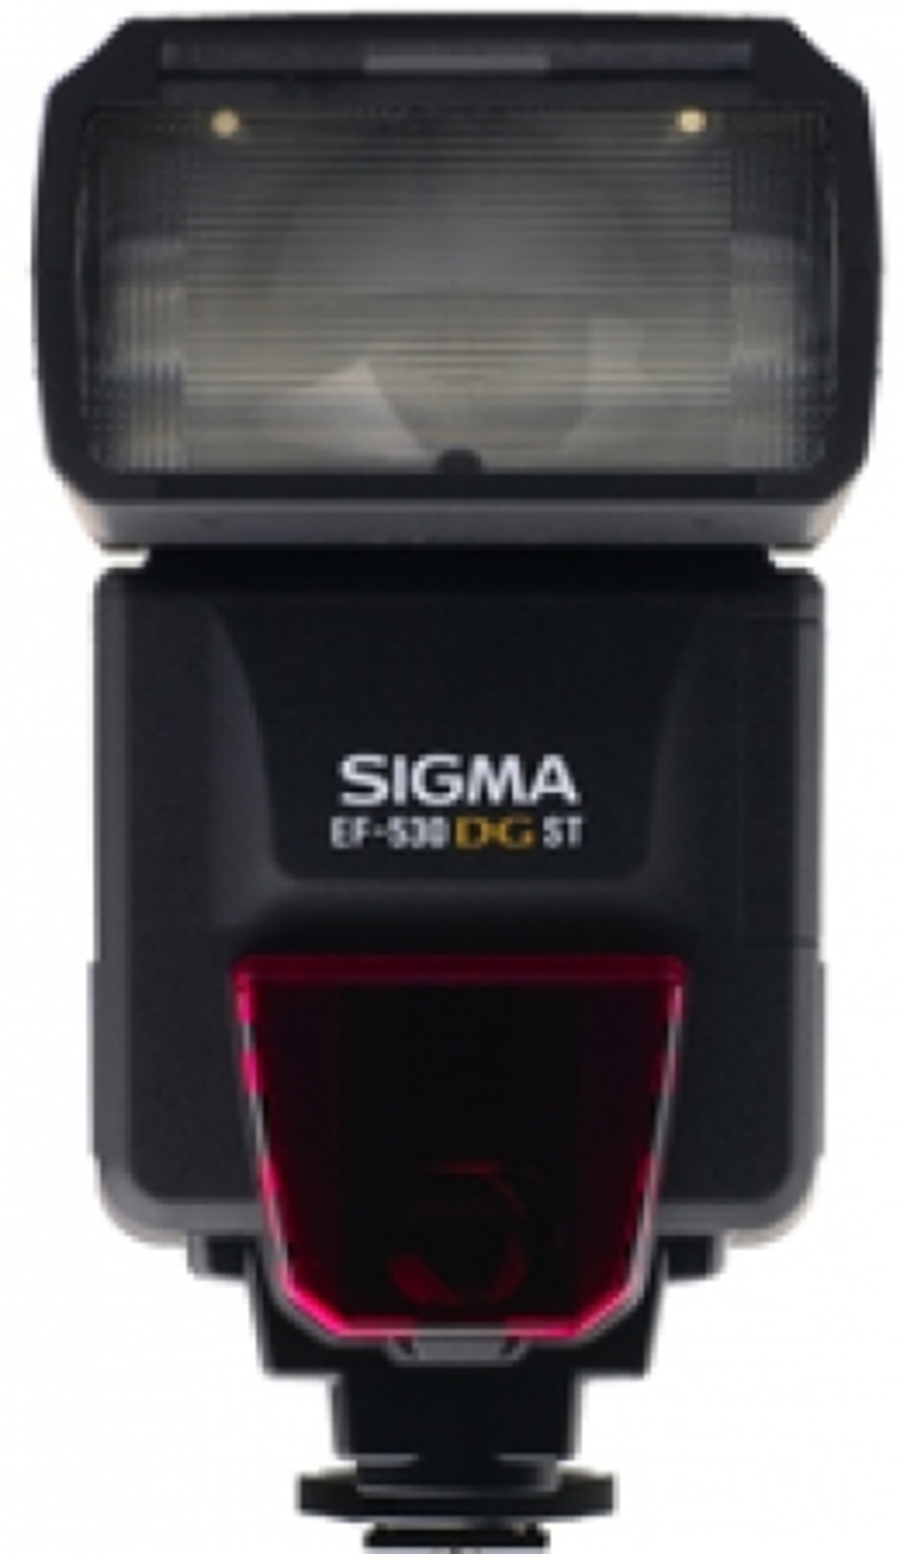 Вспышка Sigma EF 530 DG ST для Nikon